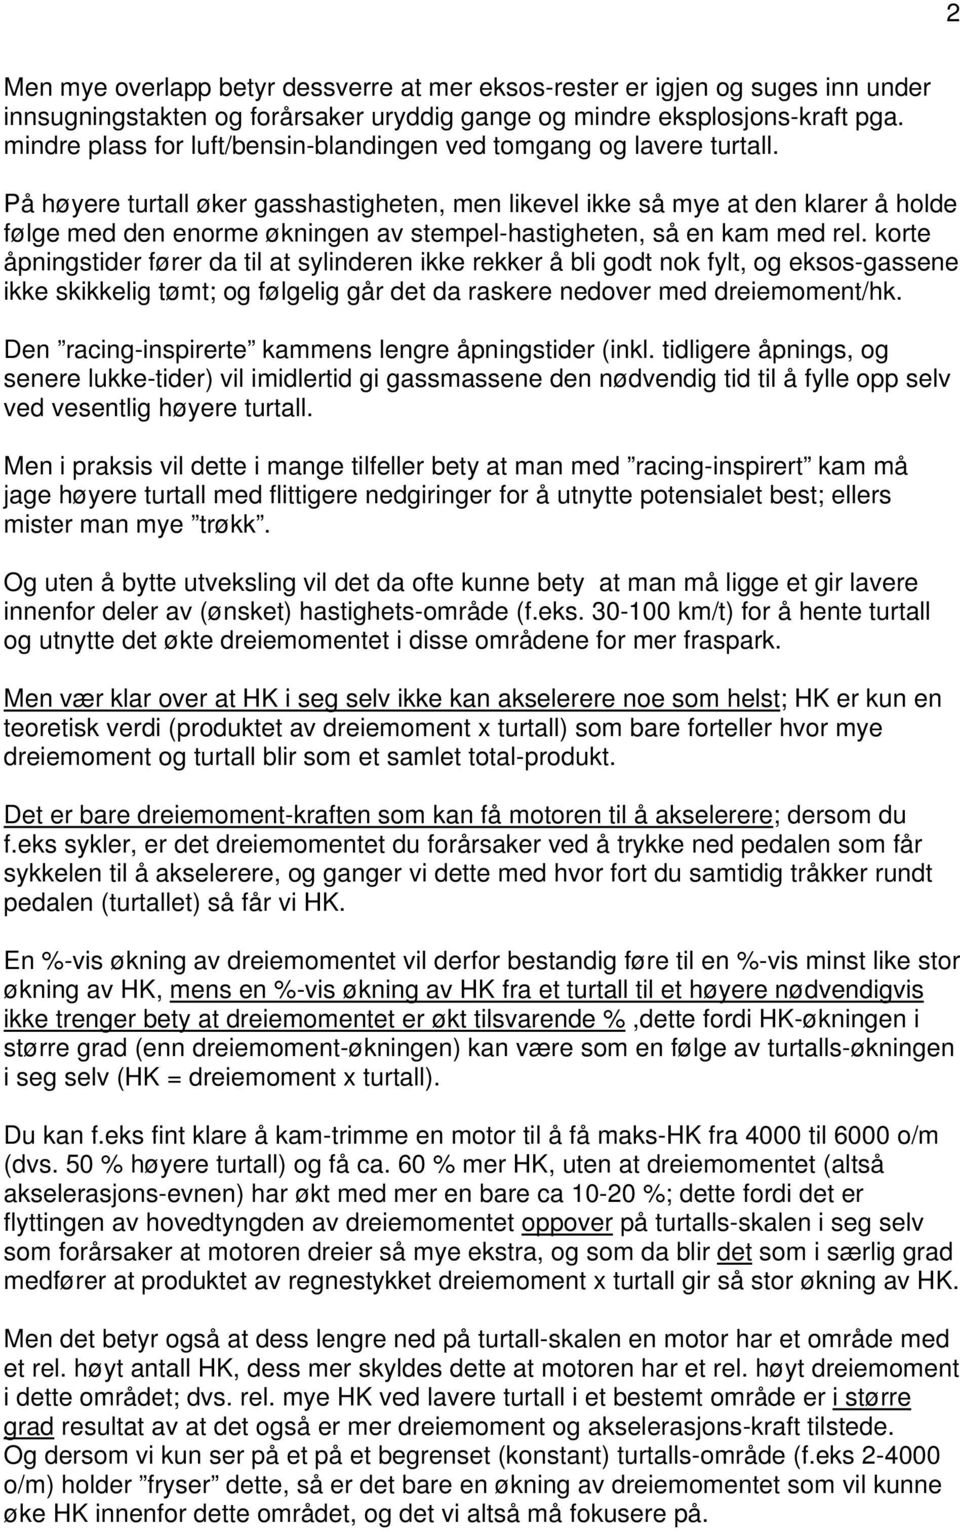 RÅD OG TIPS FOR HVERDAGS- AKSELERASJON - PDF Gratis nedlasting